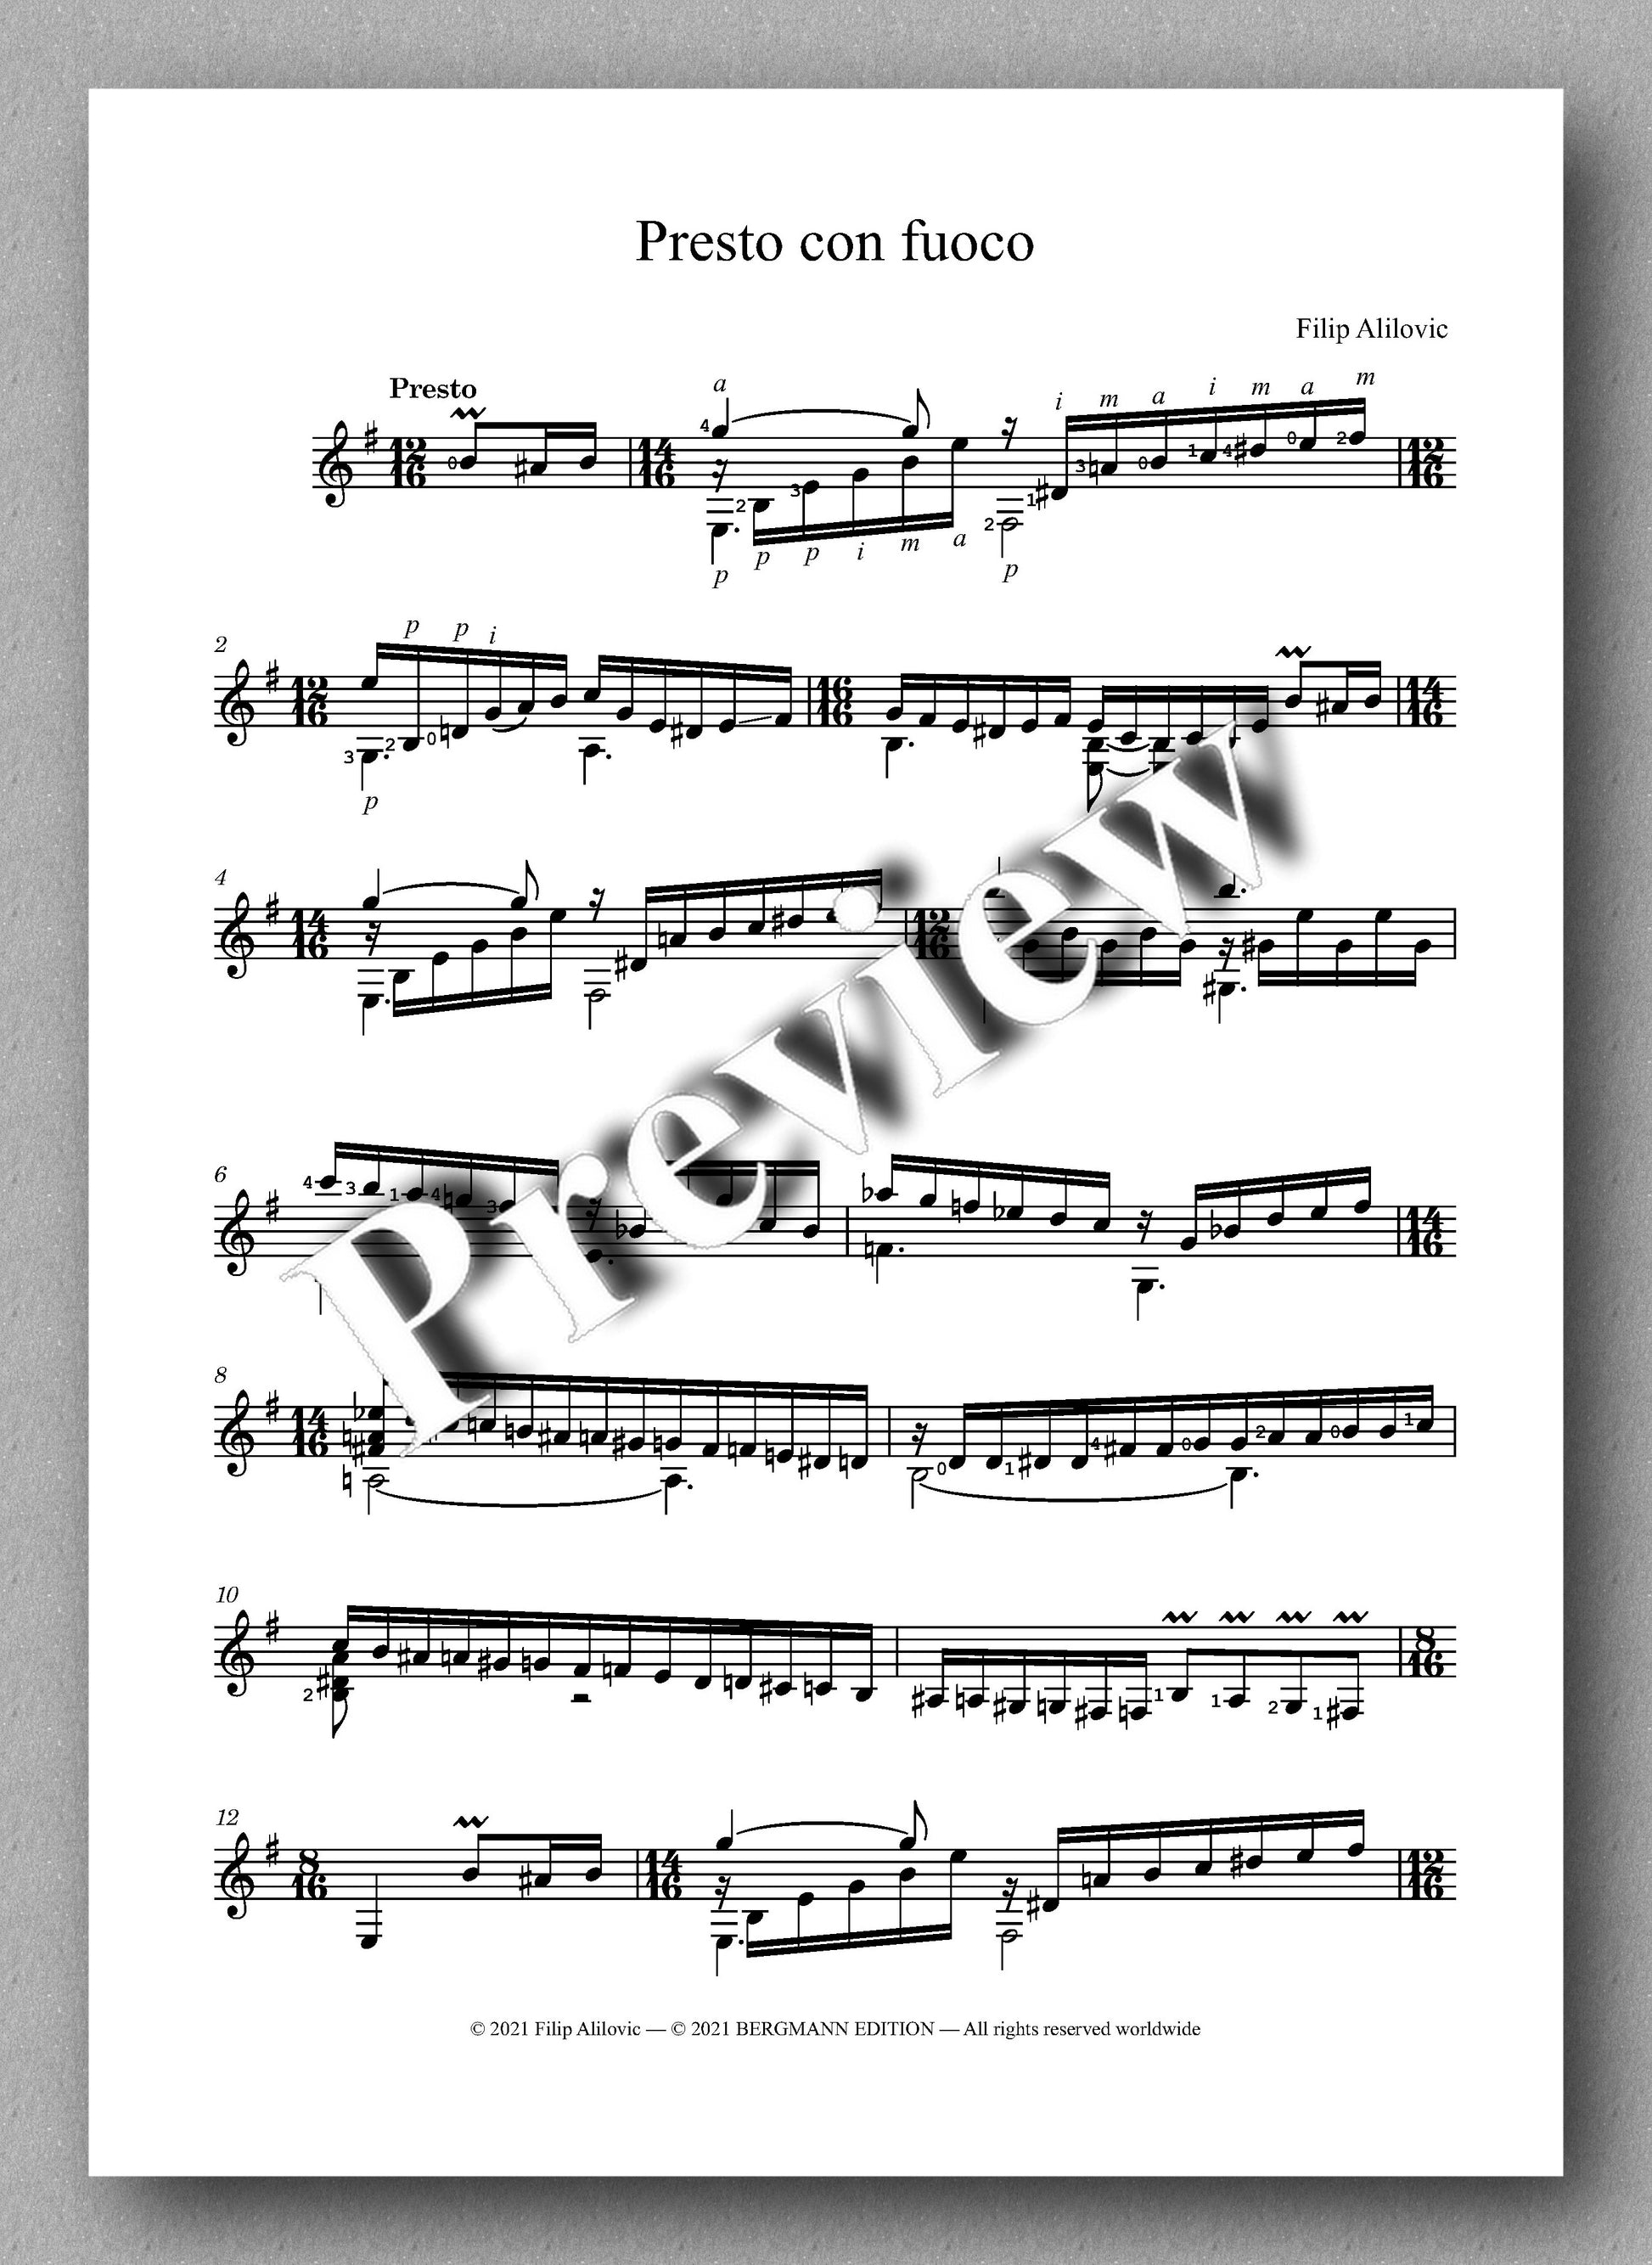 Alilovic, Presto con fuoco - music score 1